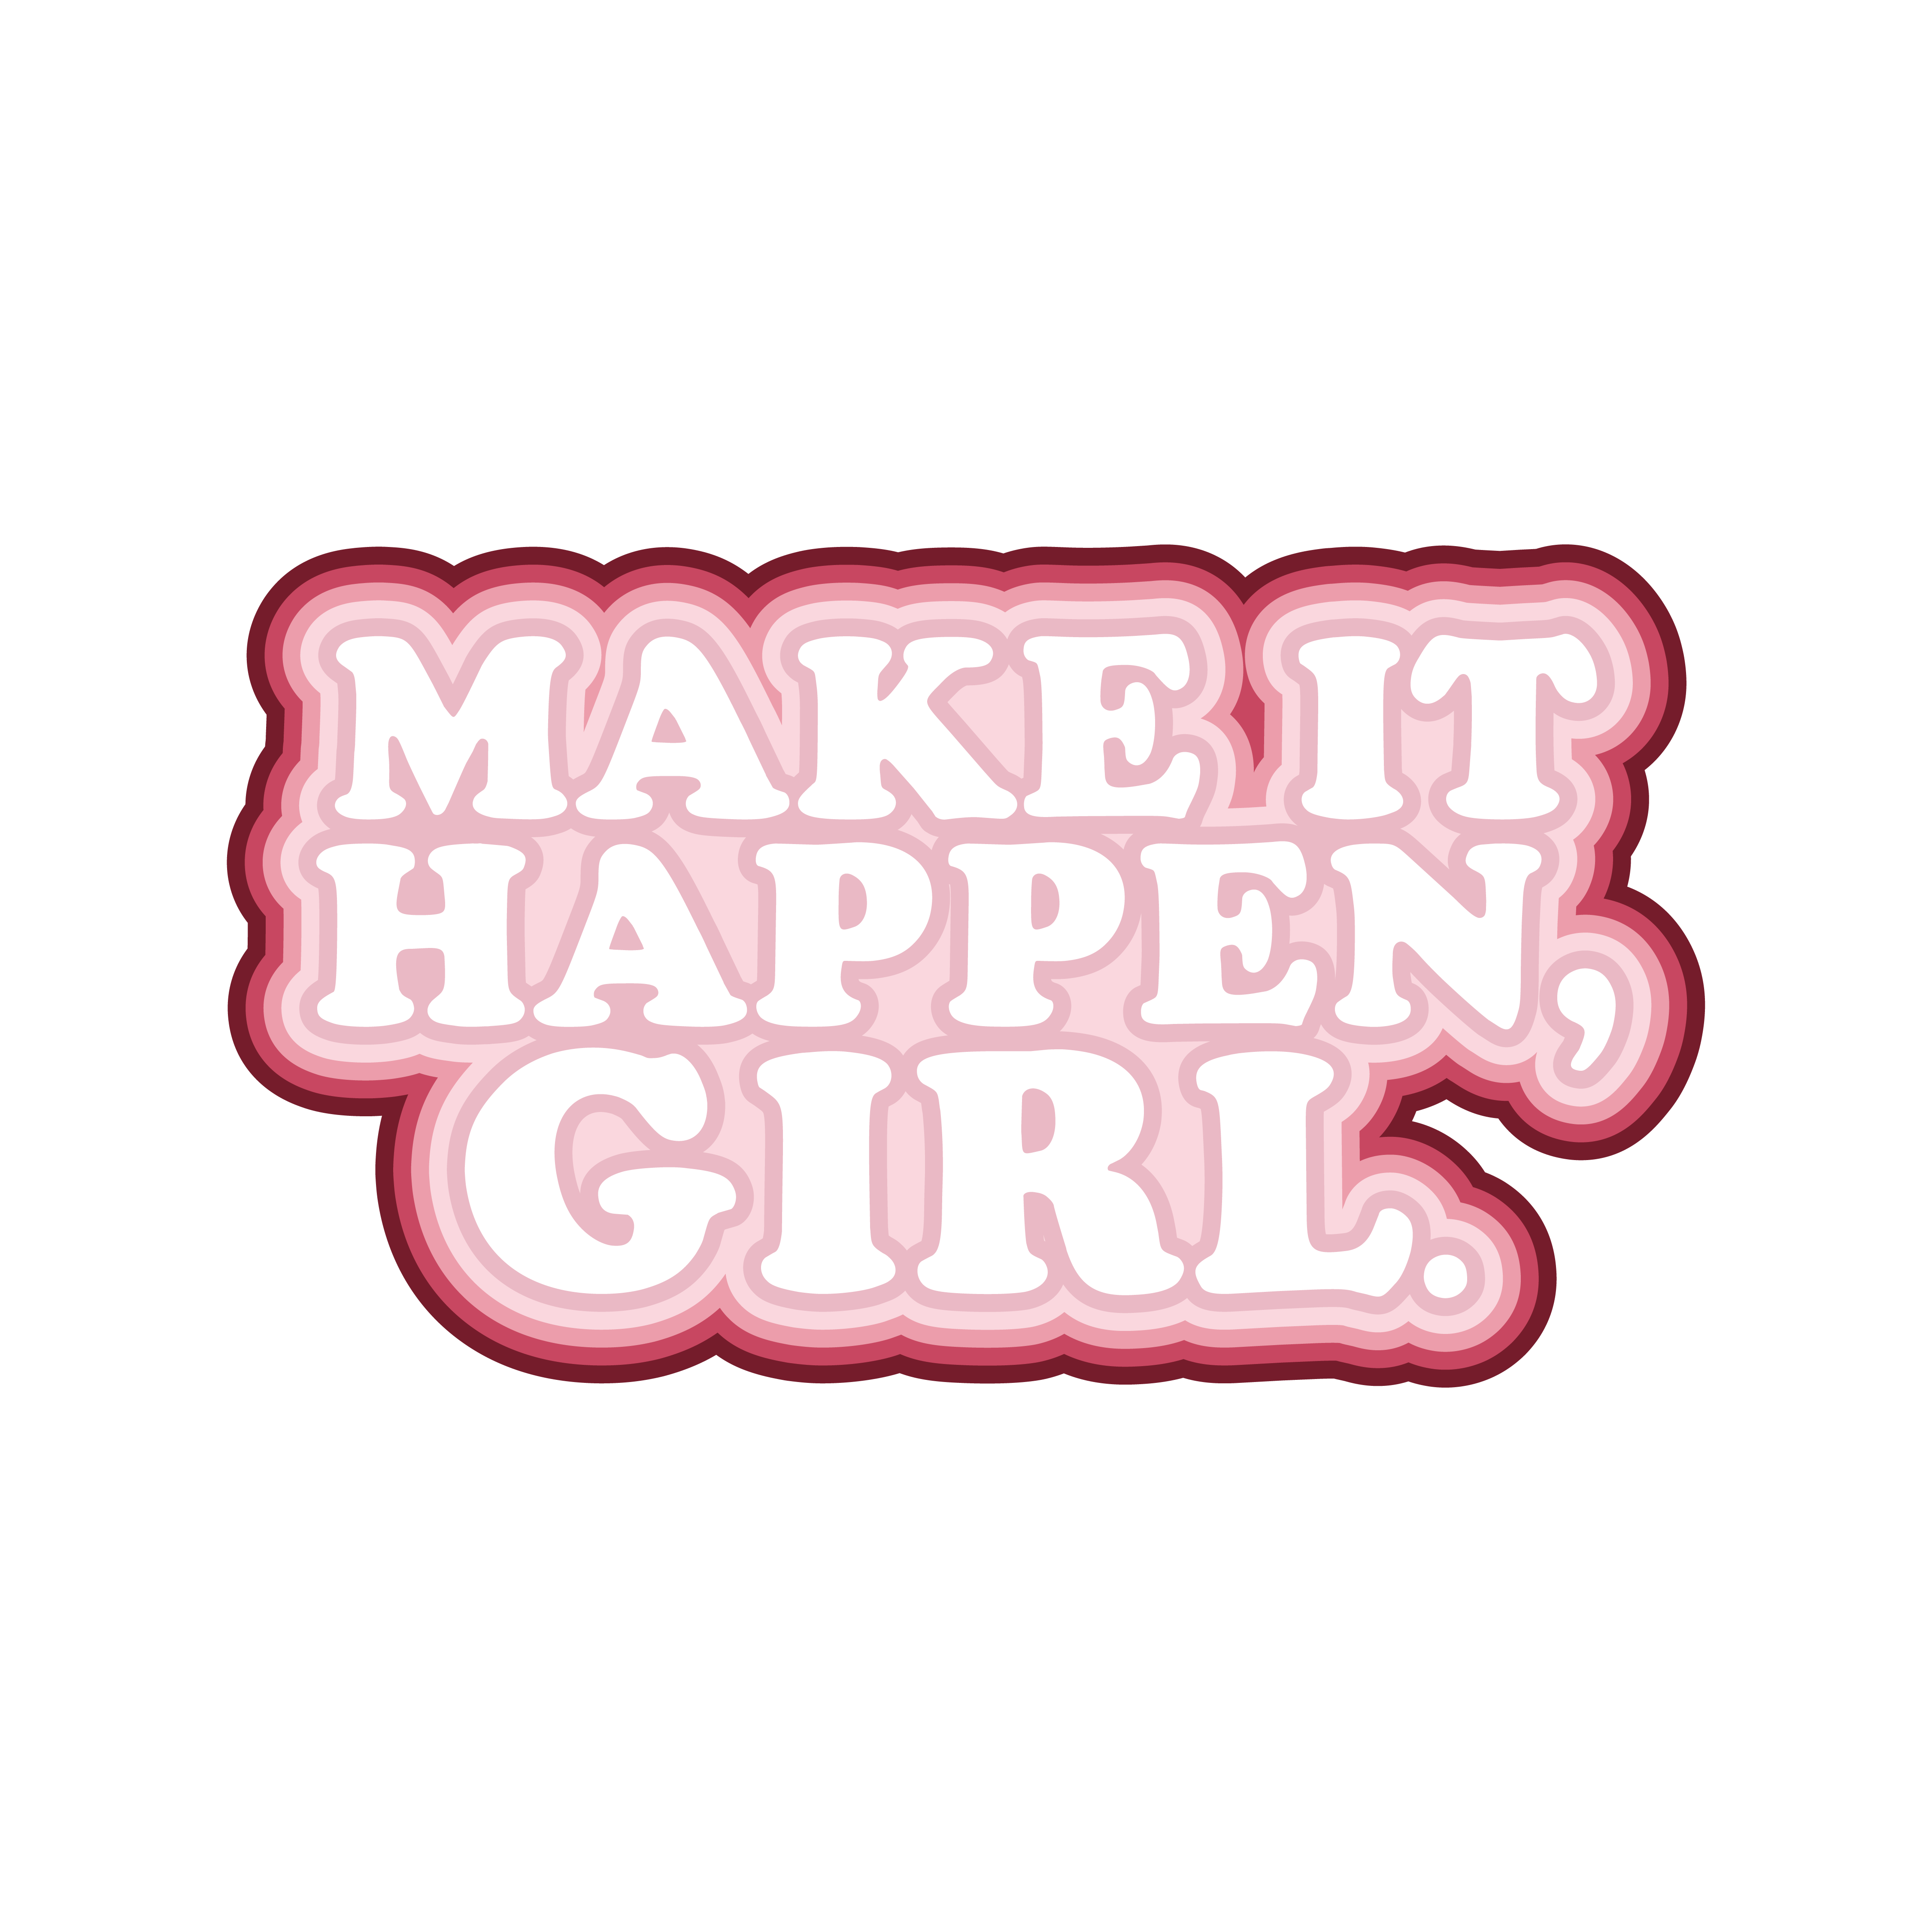 Make it happen, girl!